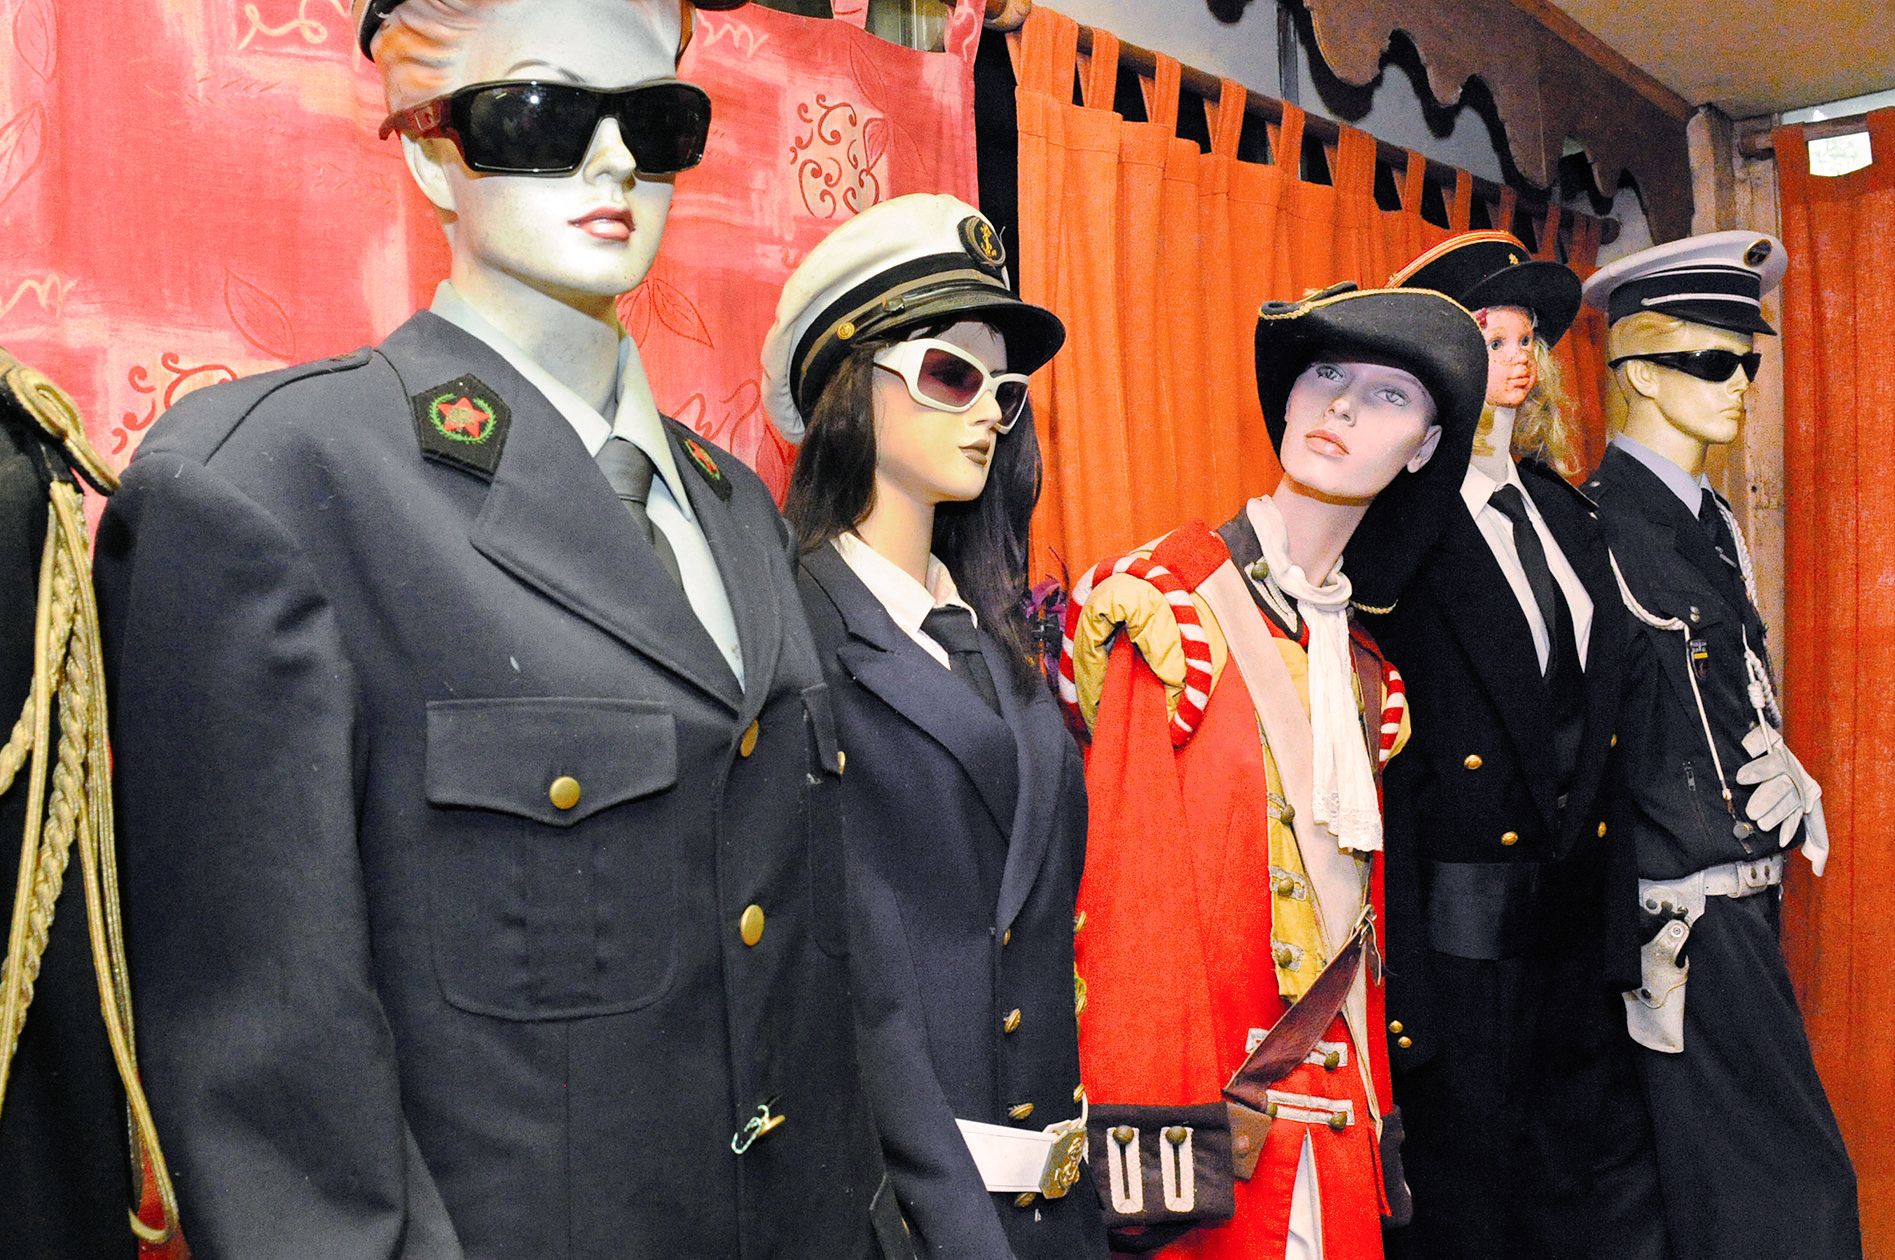 Une rangée de mannequins accueille les visiteurs dans le salon d’Alain Strotz. Ils portent chacun des uniformes que le collectionneur a glanés au cours de ses nombreux voyages.